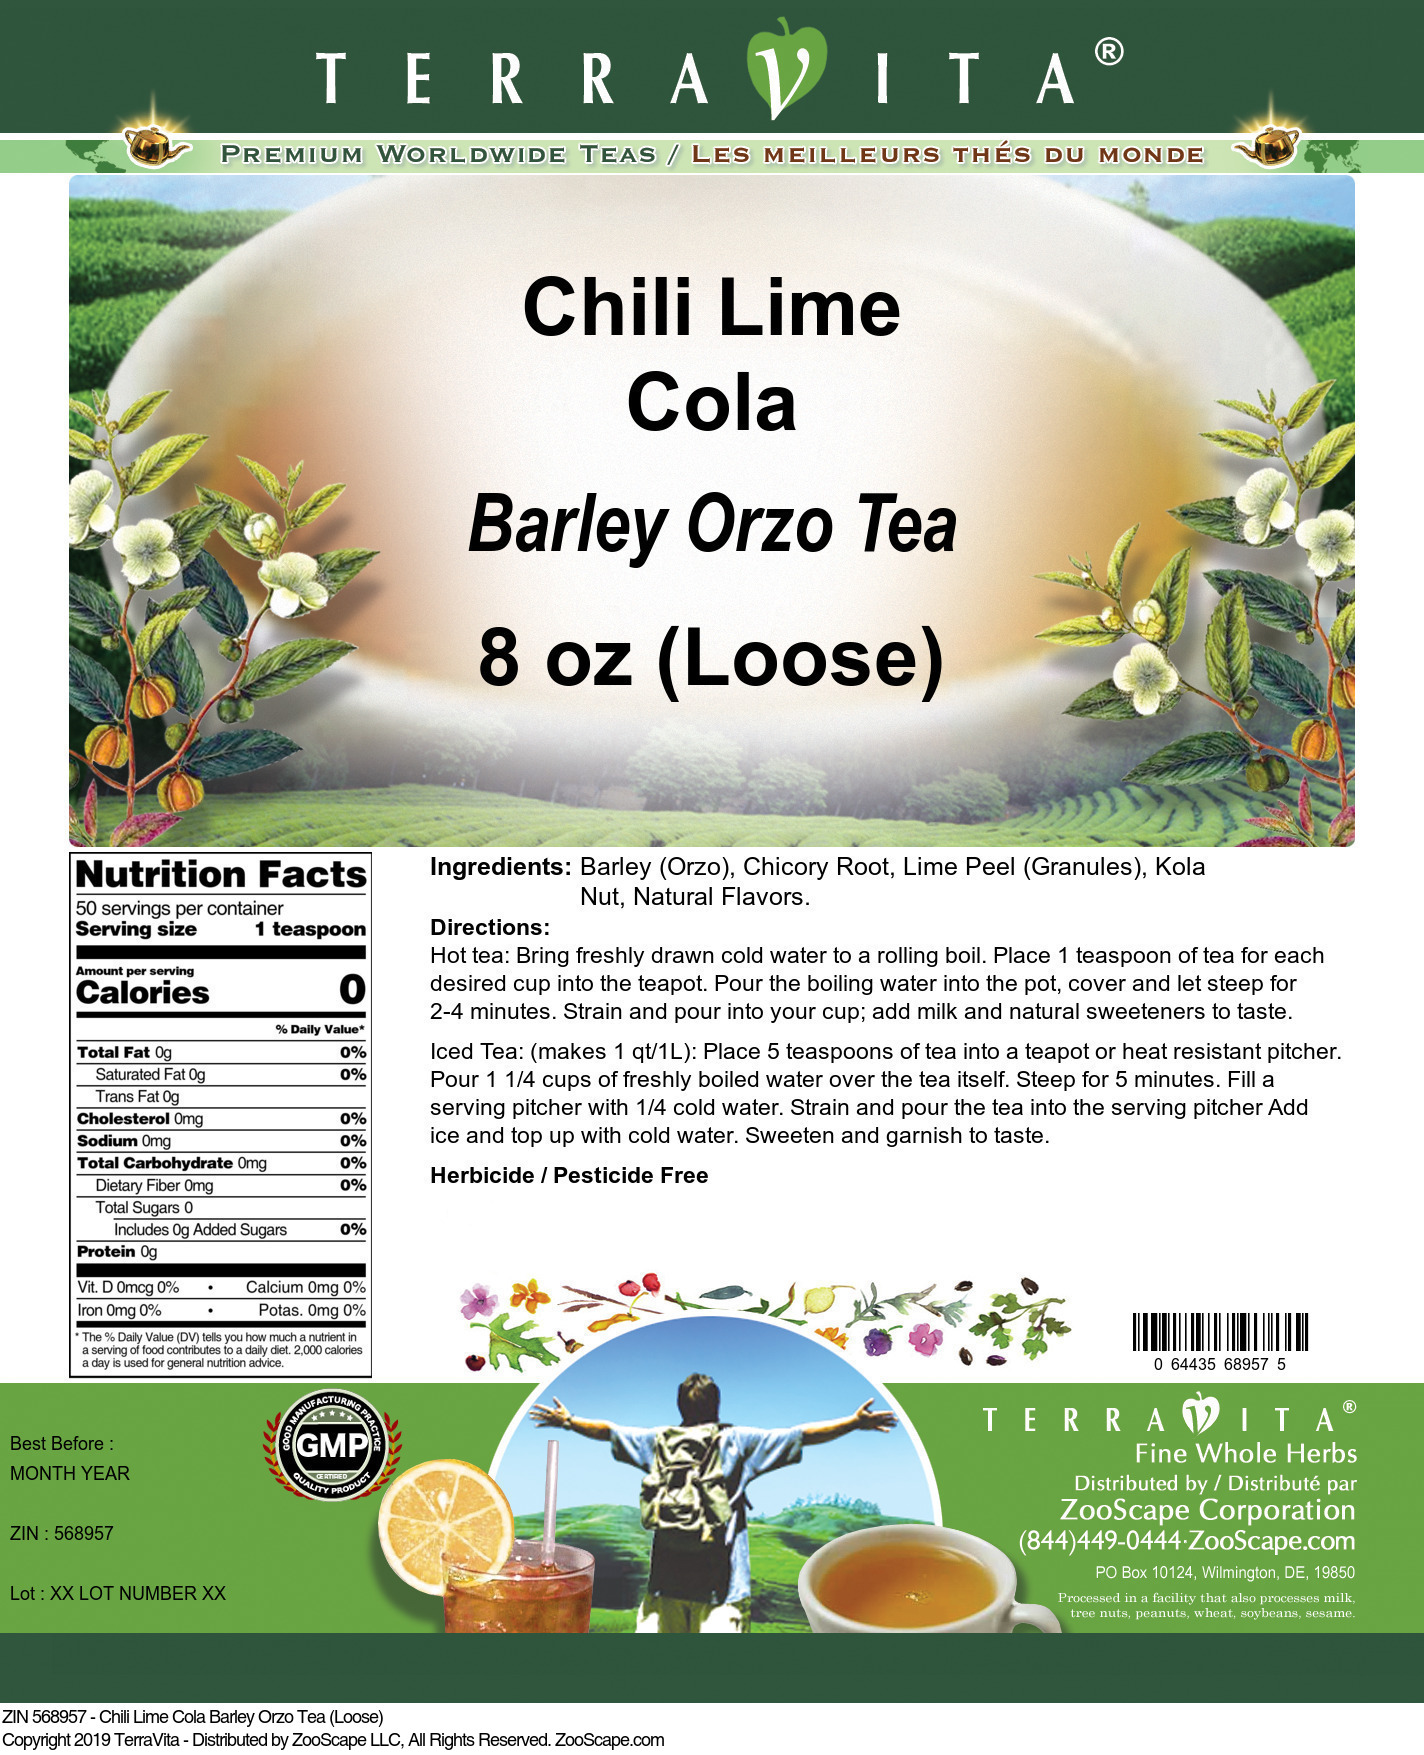 Chili Lime Cola Barley Orzo Tea (Loose) - Label